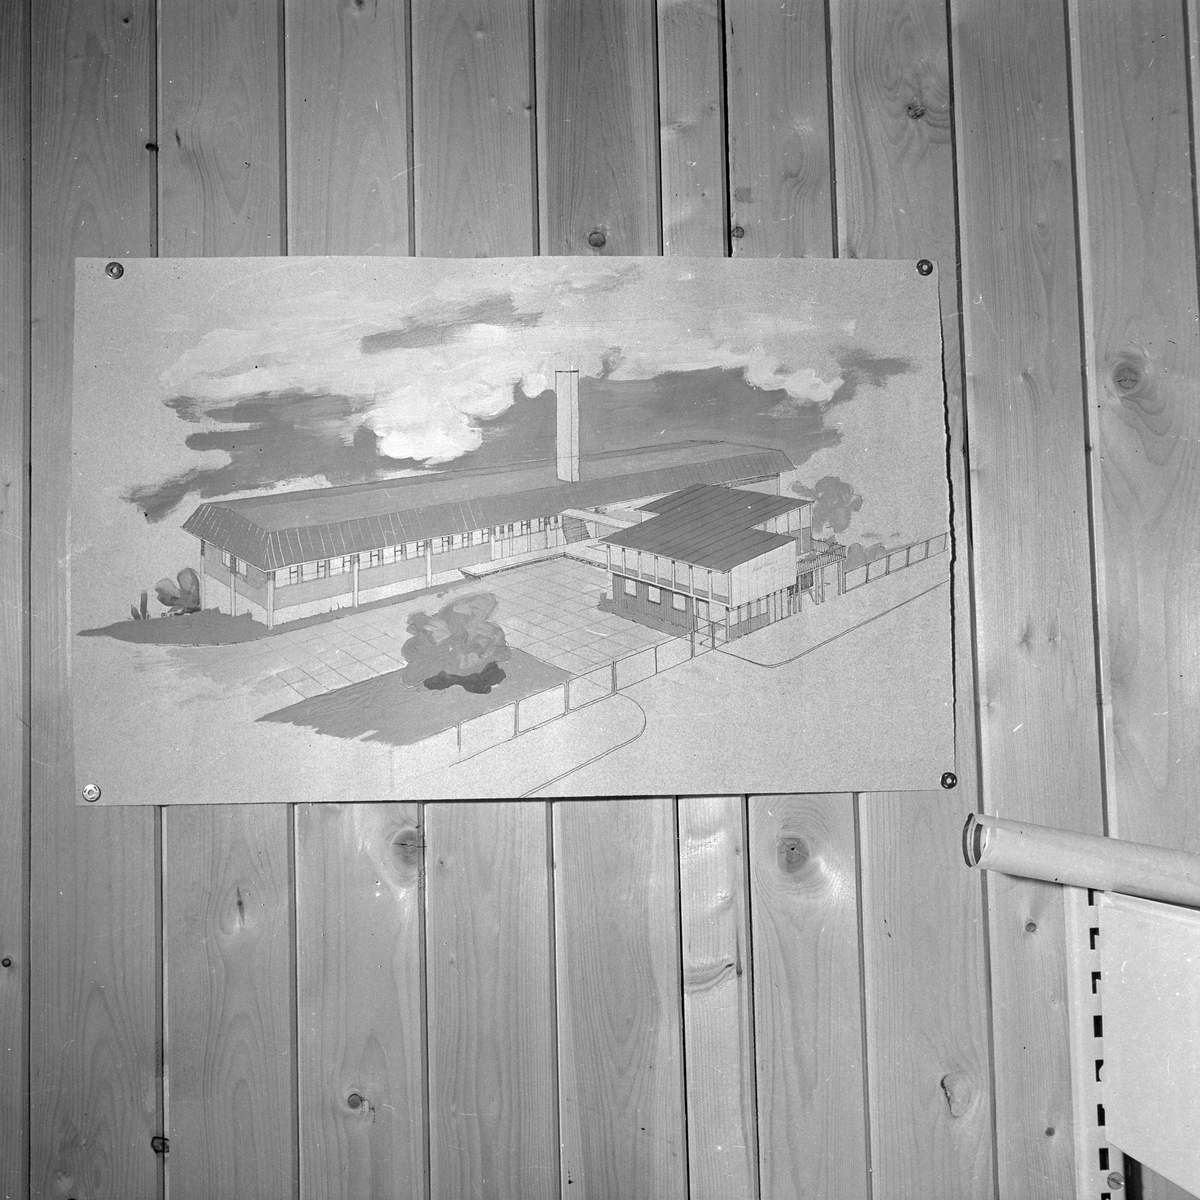 Bøndernes Salgslags tekniske kontor. Tegninger av slakterier i bla Mosjøen, Hammerfest og Stjørdal